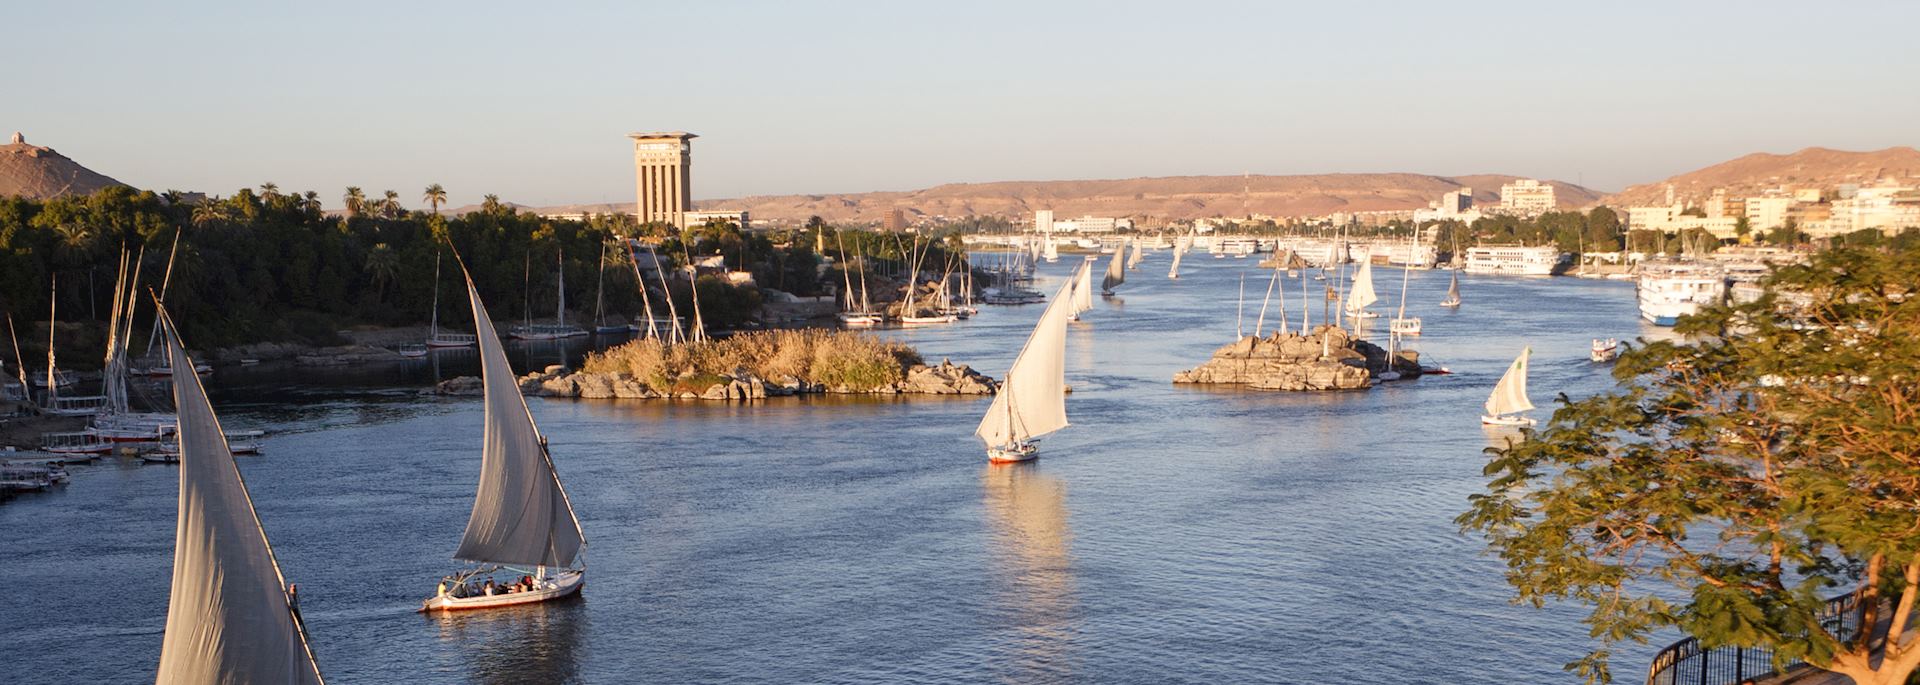 River Nile, Aswan